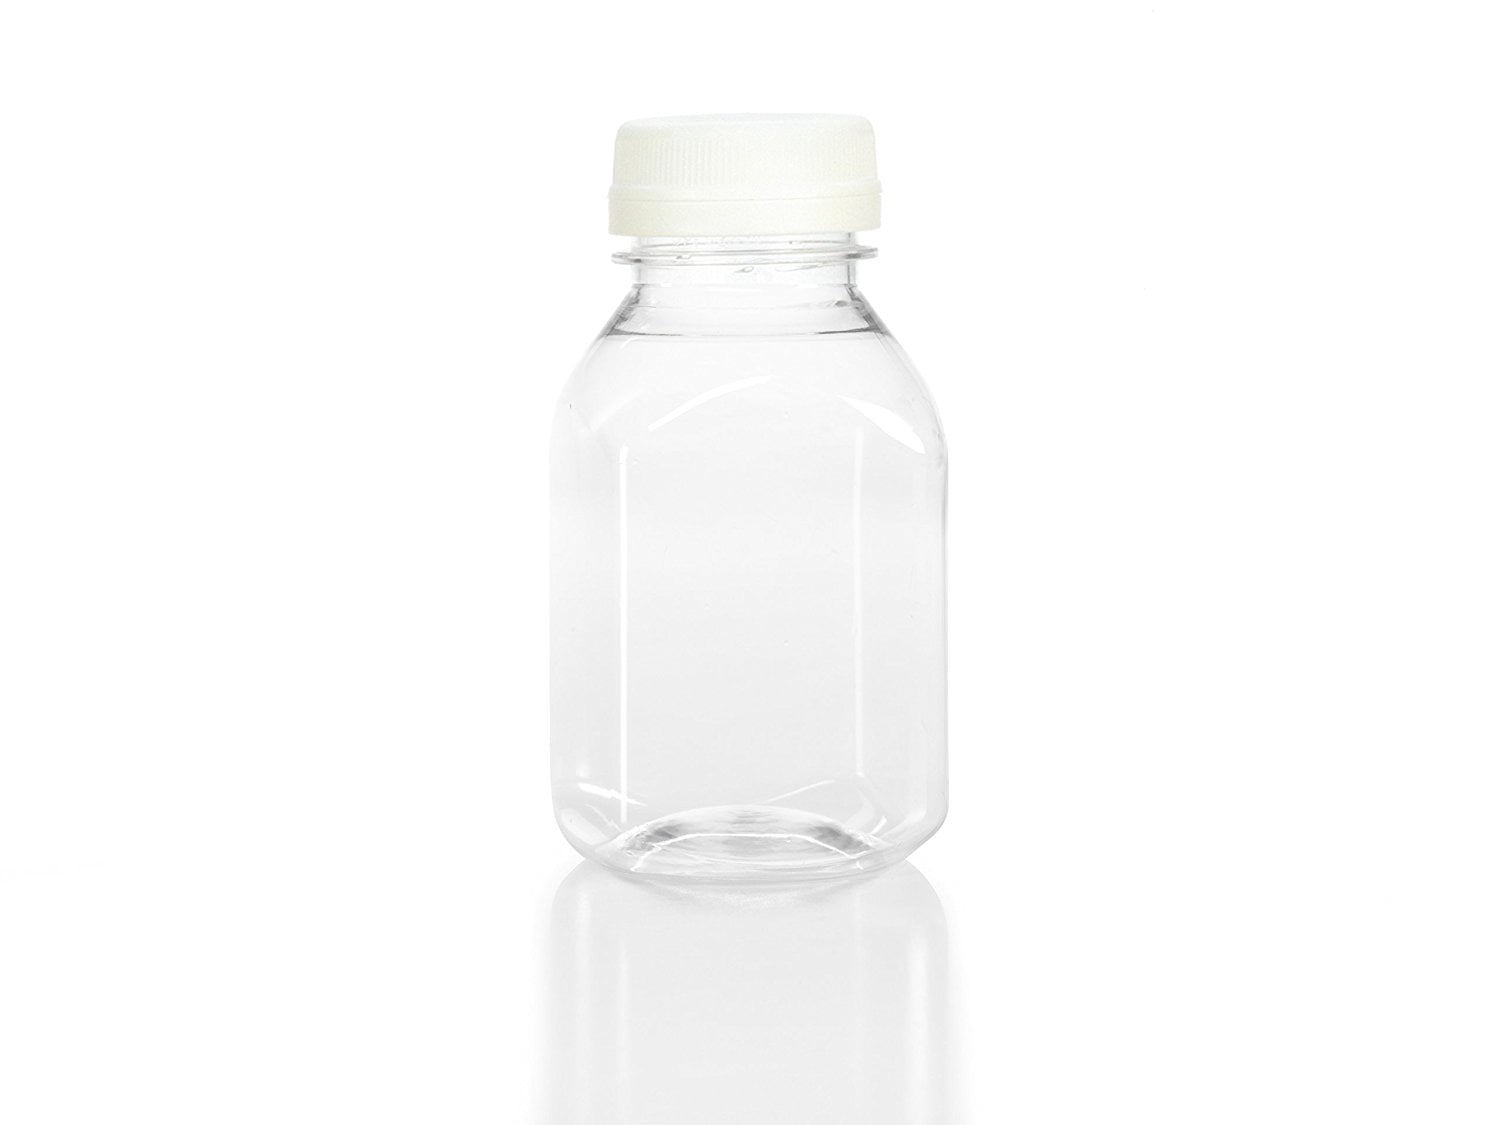  HNXAZG 10 Pcs 8 Oz Plastic Juice Bottles Empty Clear